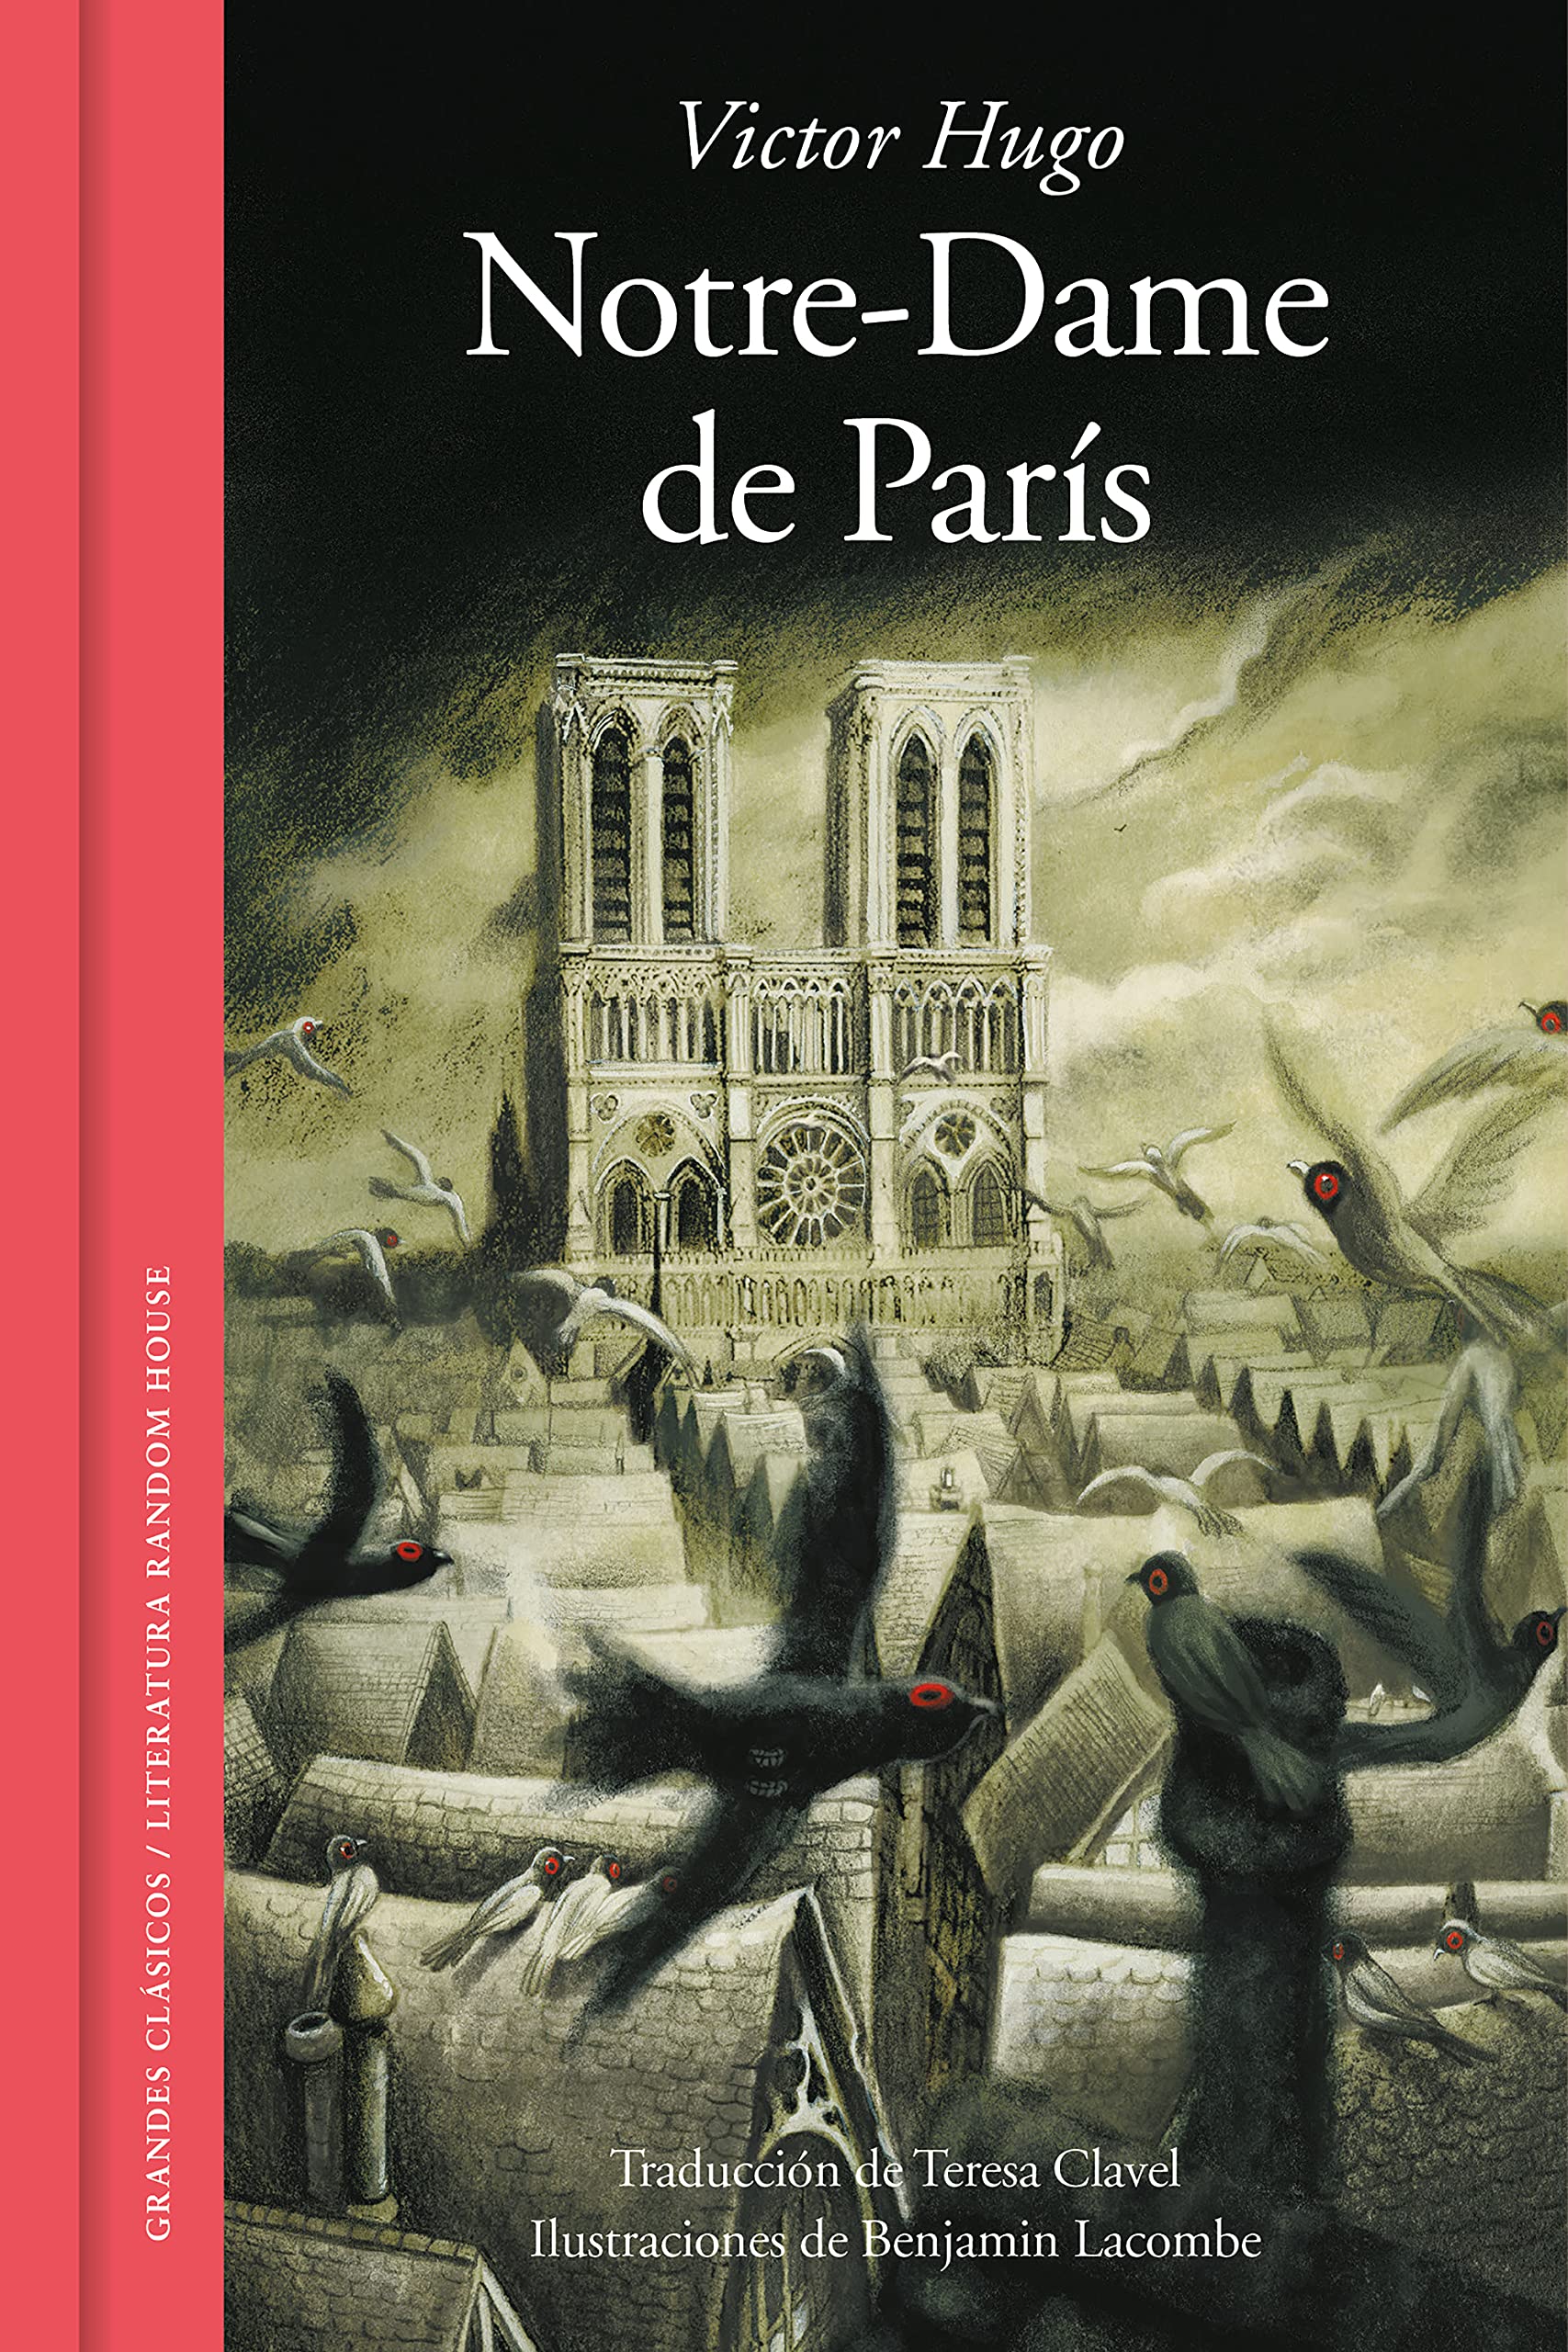 La narrazione nel romanzo Notre Dame de Paris di Victor Hugo - Risorse per  la scuola